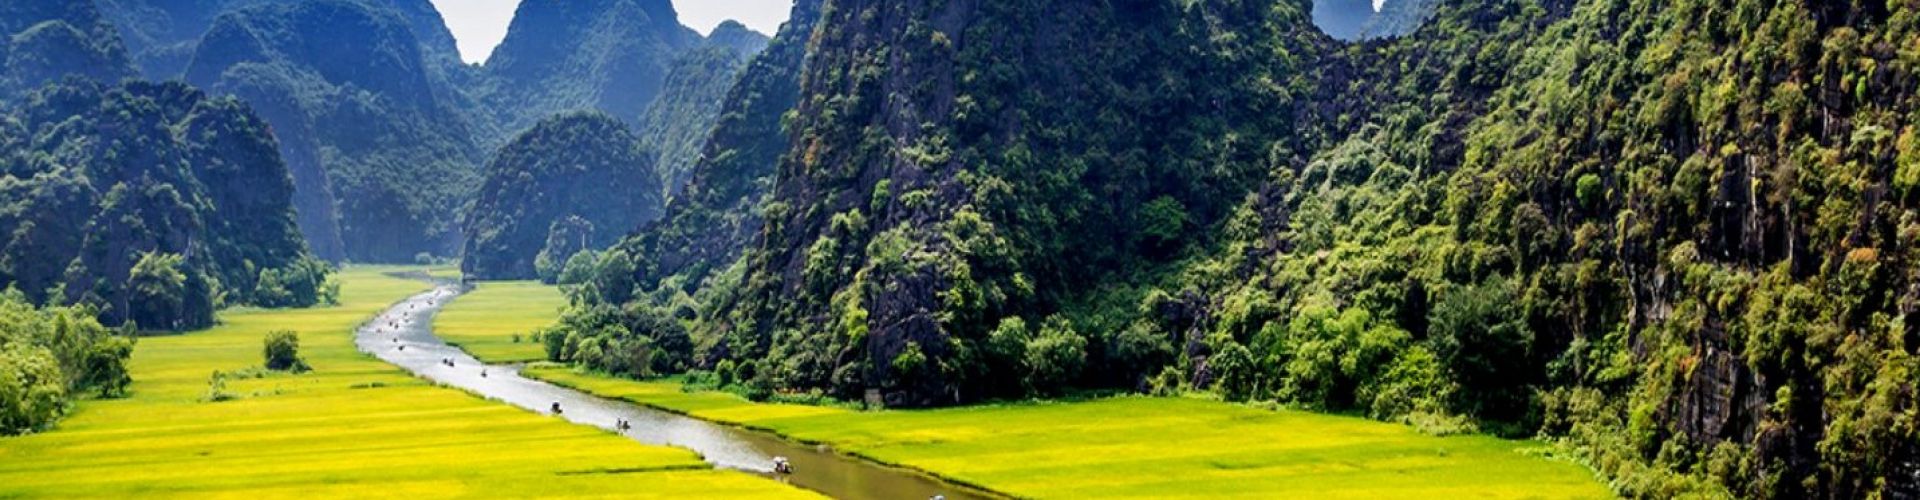 Các điểm du lịch tại Ninh Bình